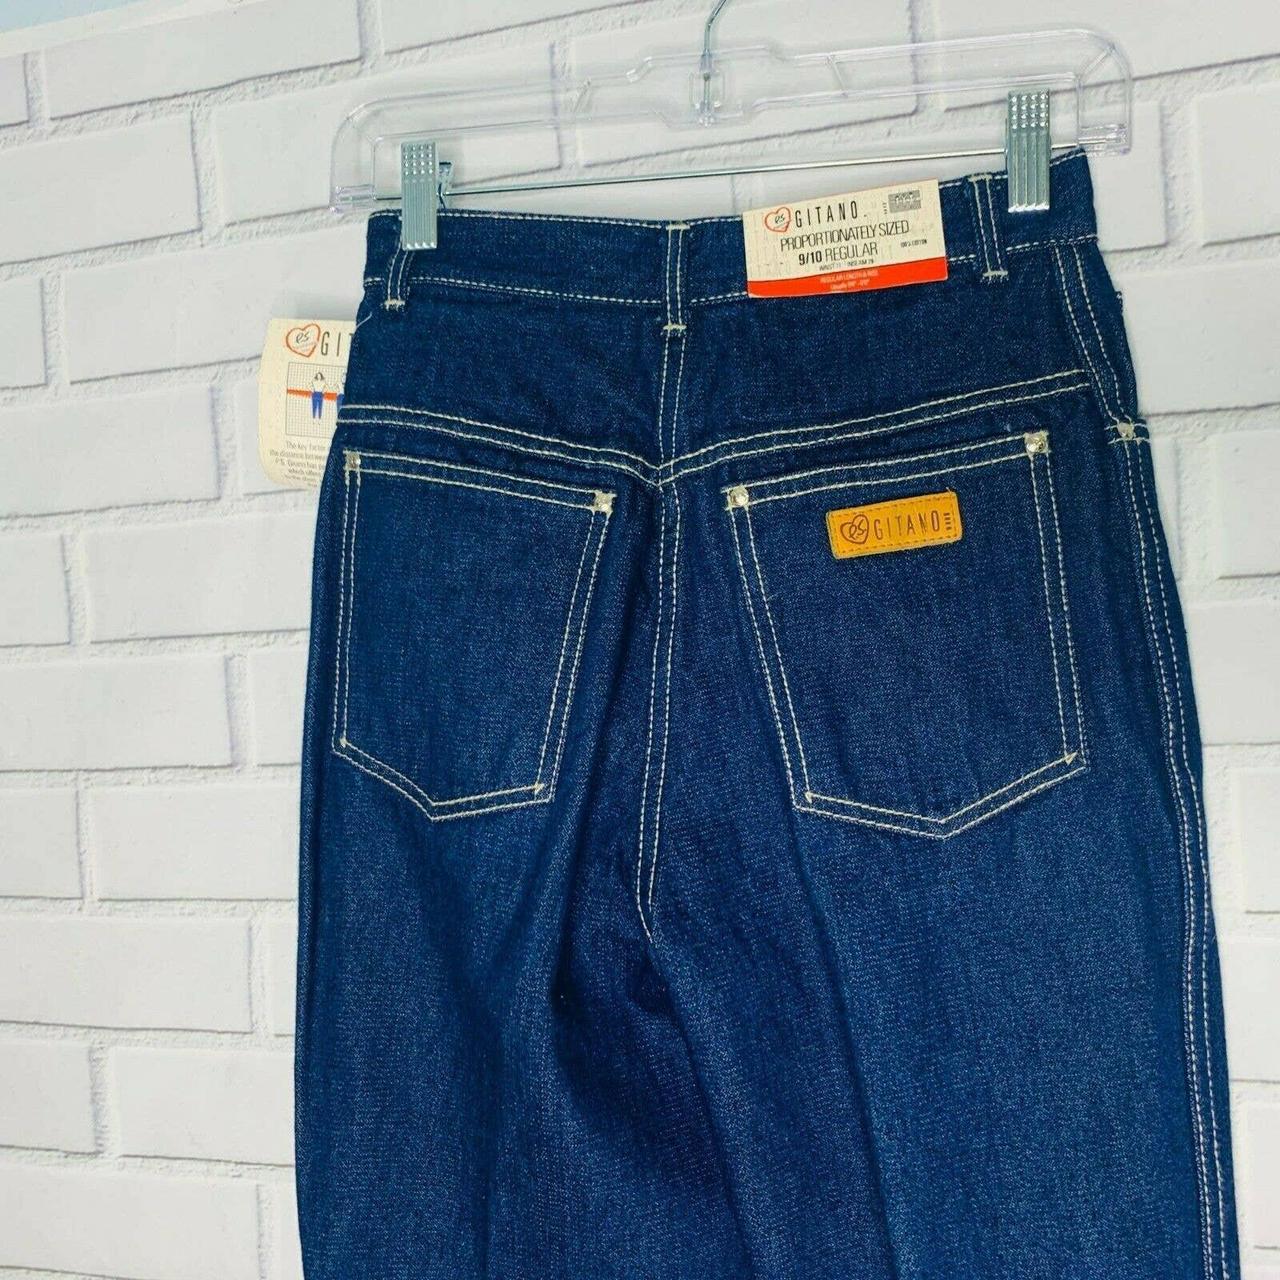 NWT vintage Gitano jeans high waist dark wash... - Depop